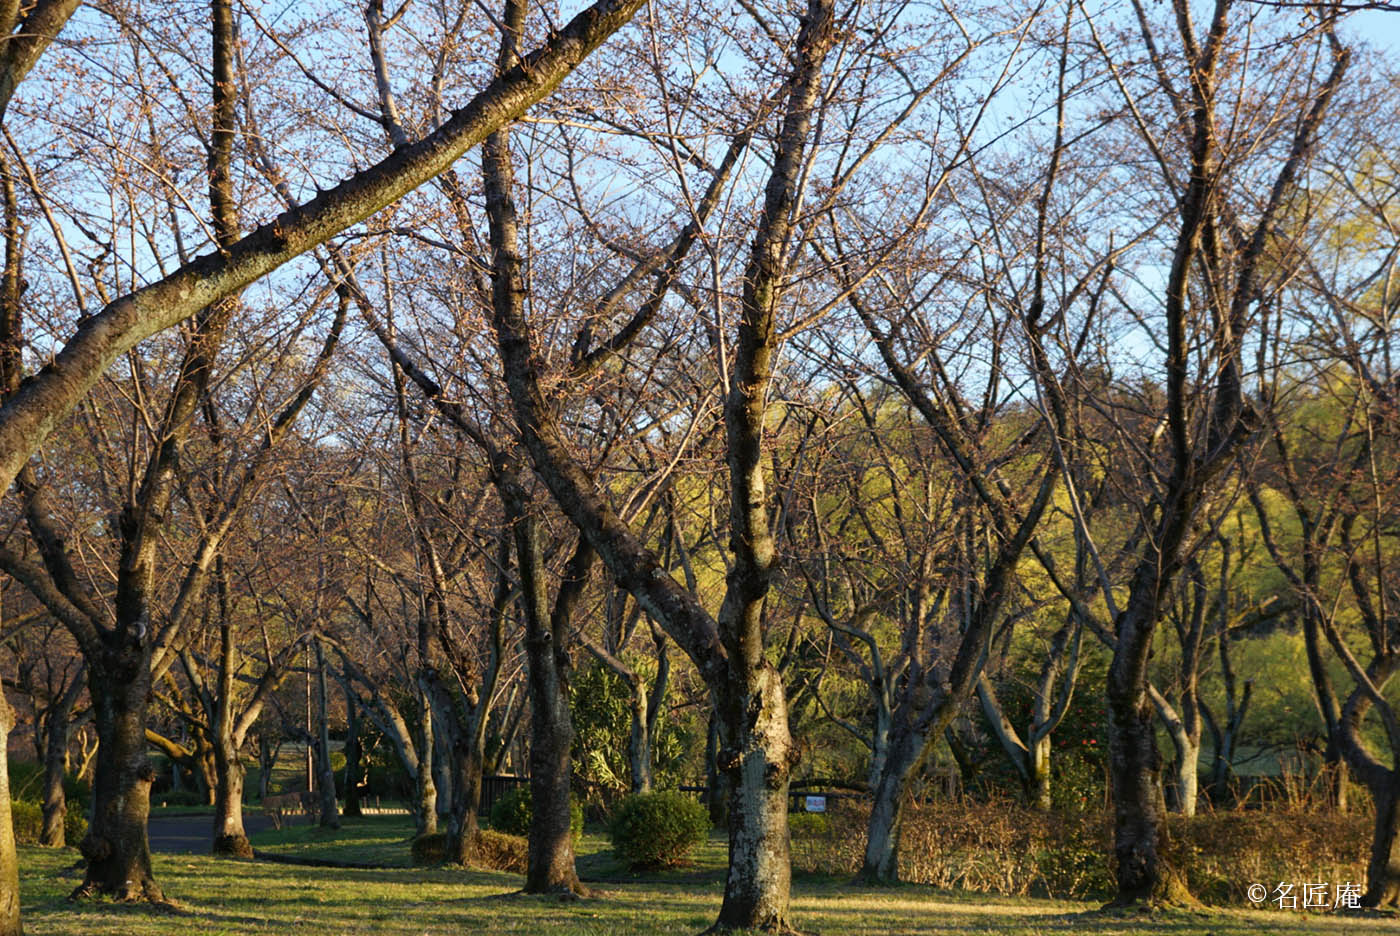 平和公園桜